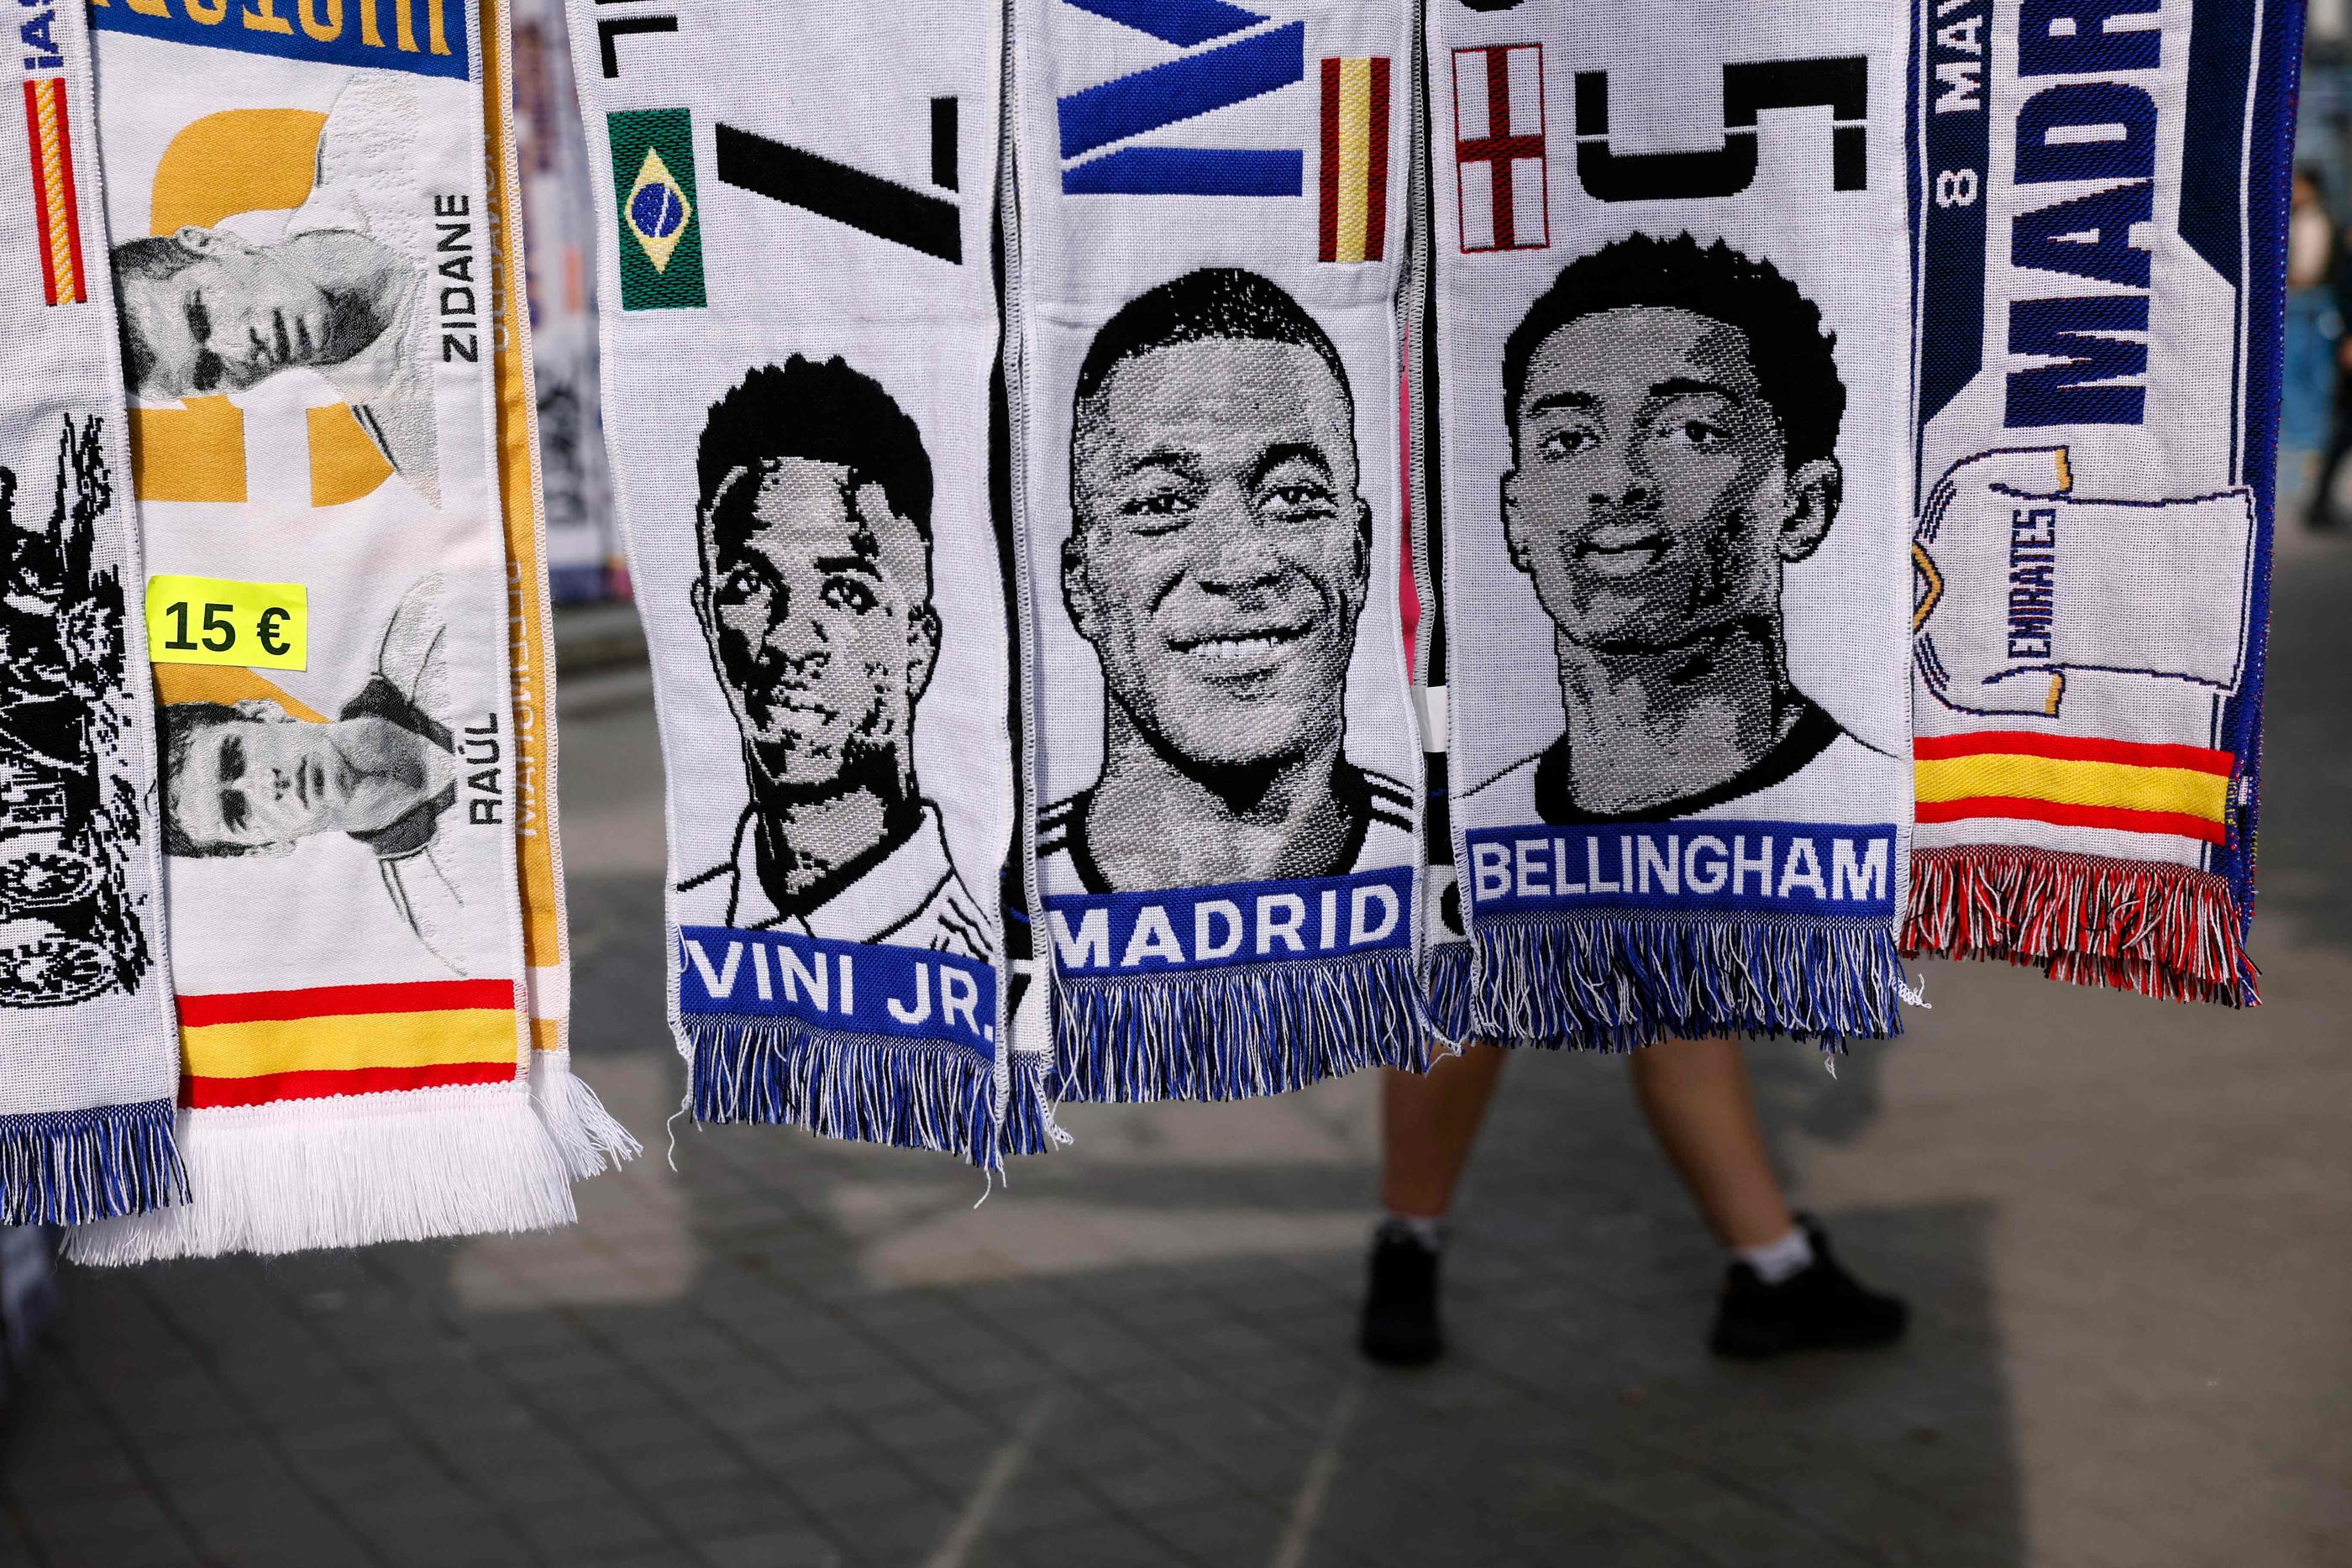 À Madrid, ce mercredi 8 mai, certaines écharpes vendues par des marcheurs ambulants présentent déjà Kylian Mbappé comme un joueur du Real. AFP/Oscar Del Pozo